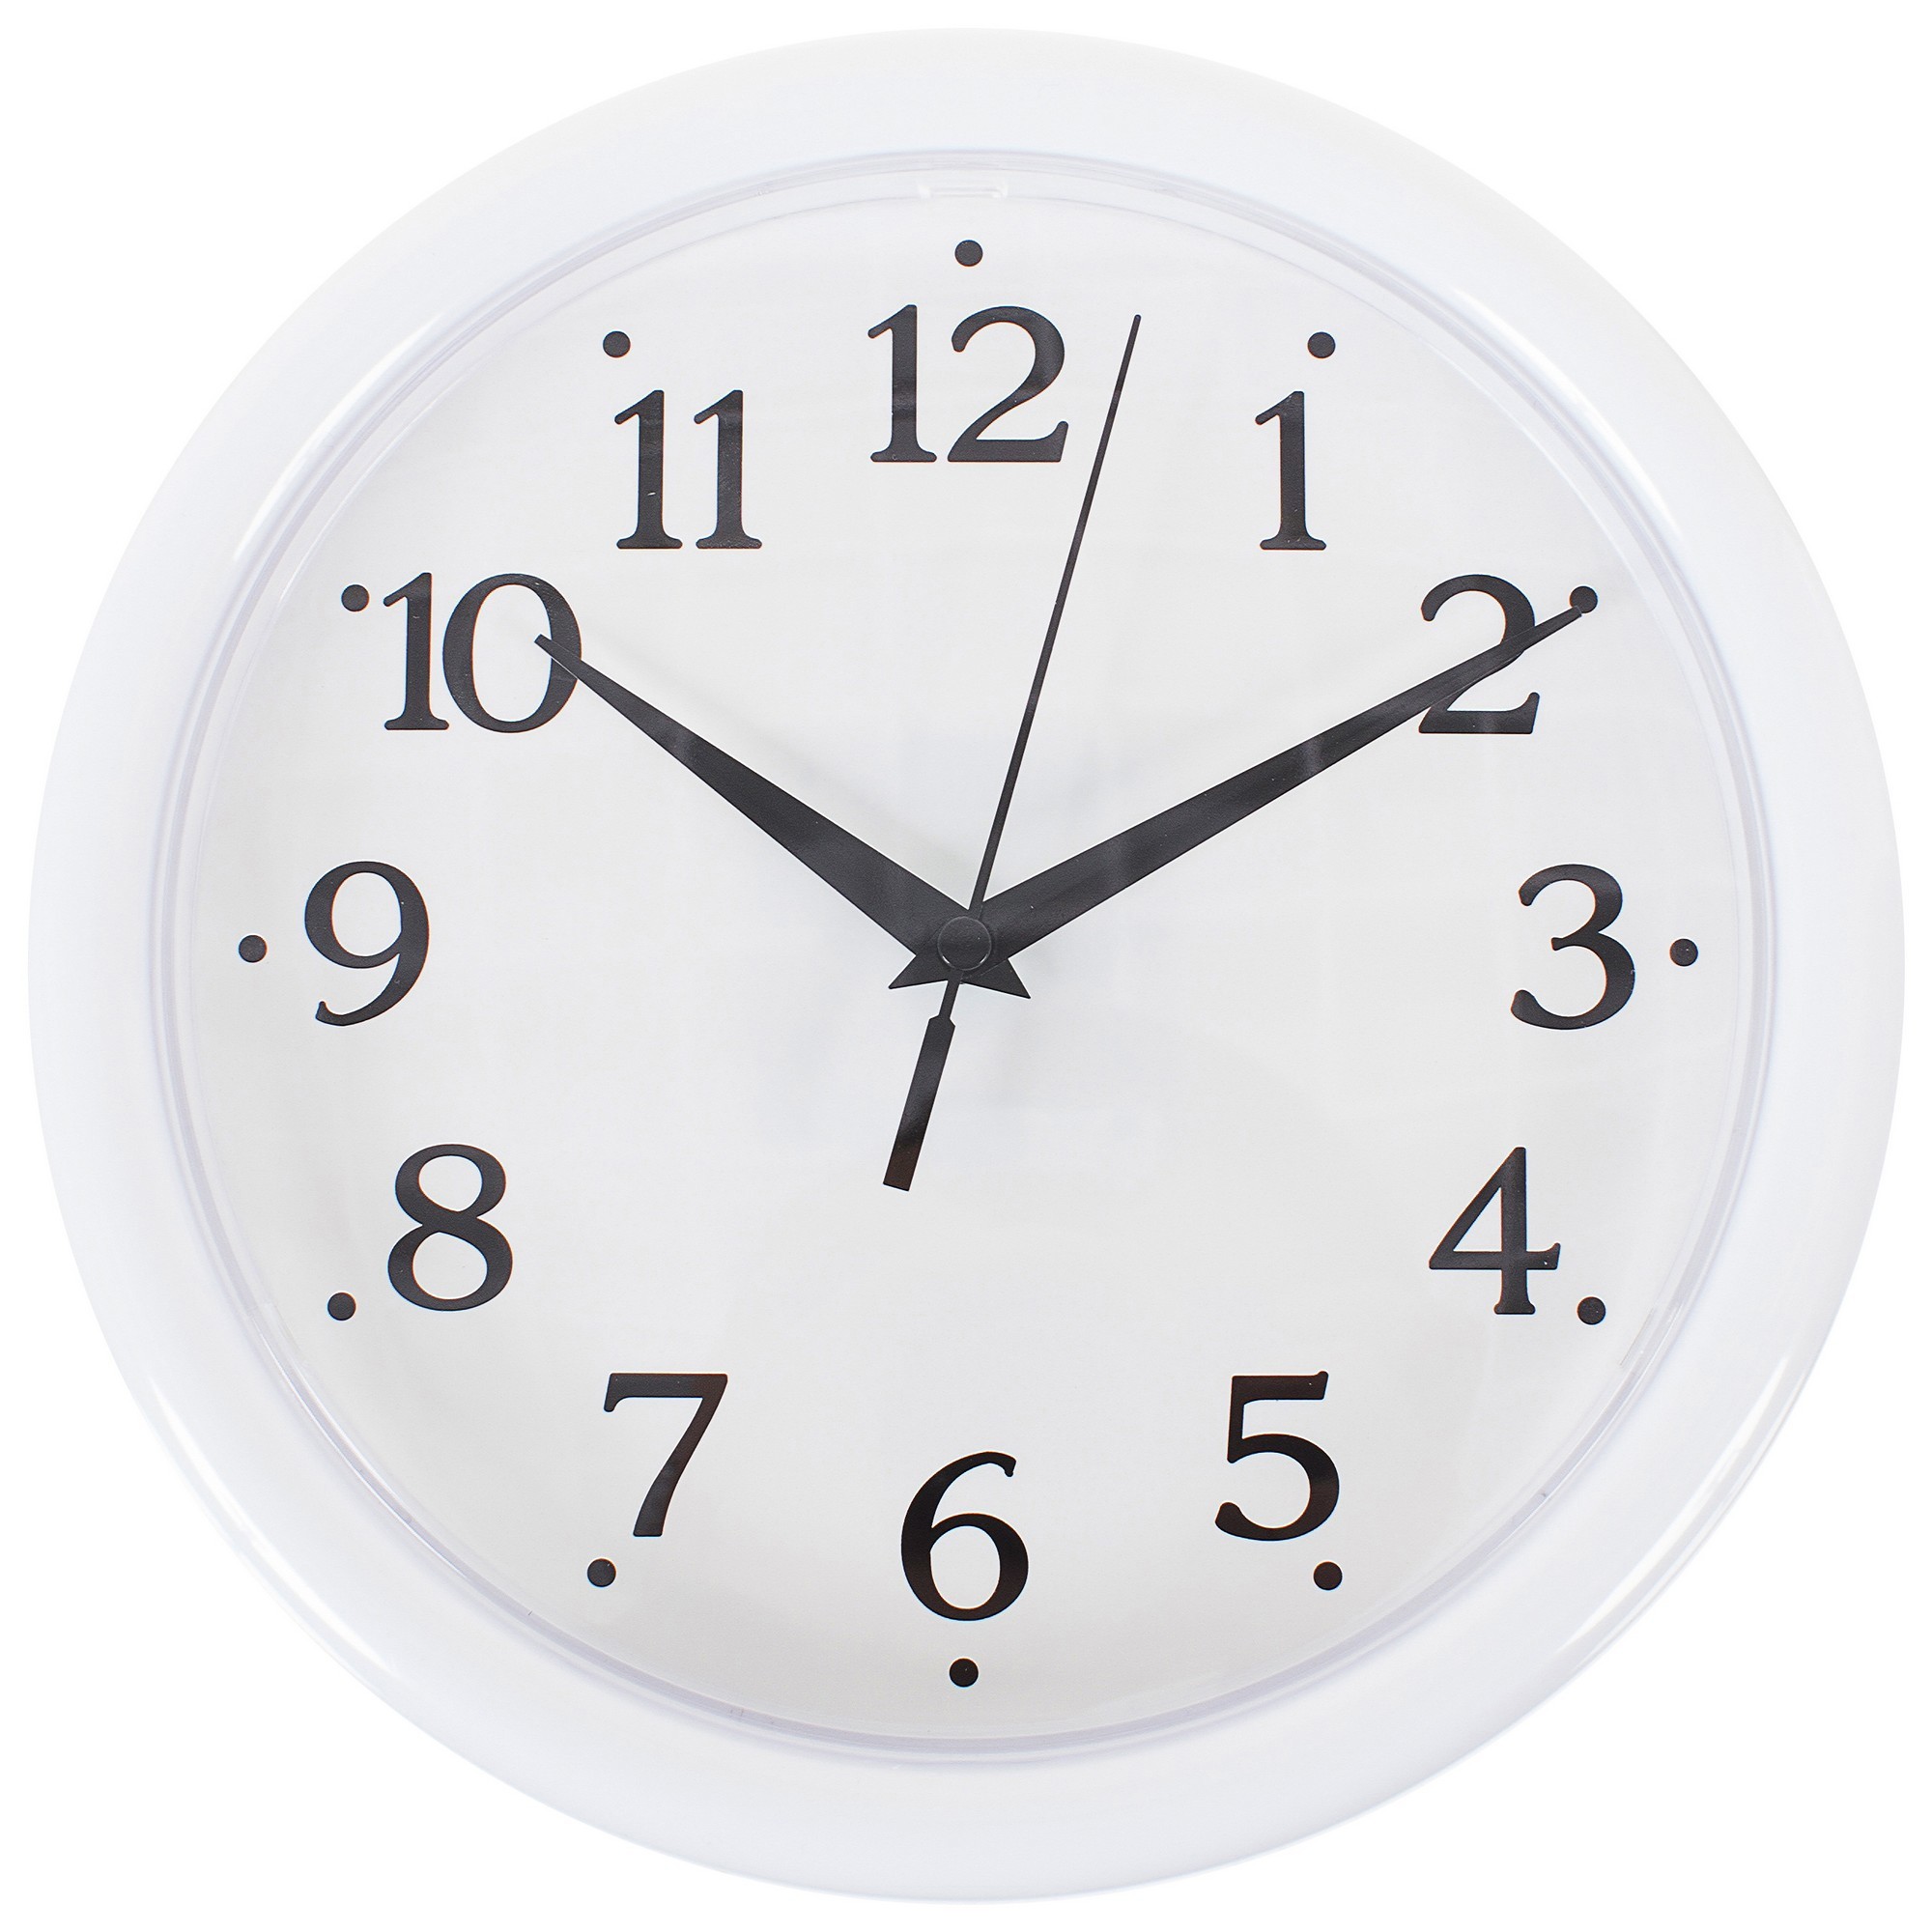 18818732 Часы настенные разборные с возможностью декорирования диаметр 24.5 см цвет белый STLM-0012993 TROYKATIME